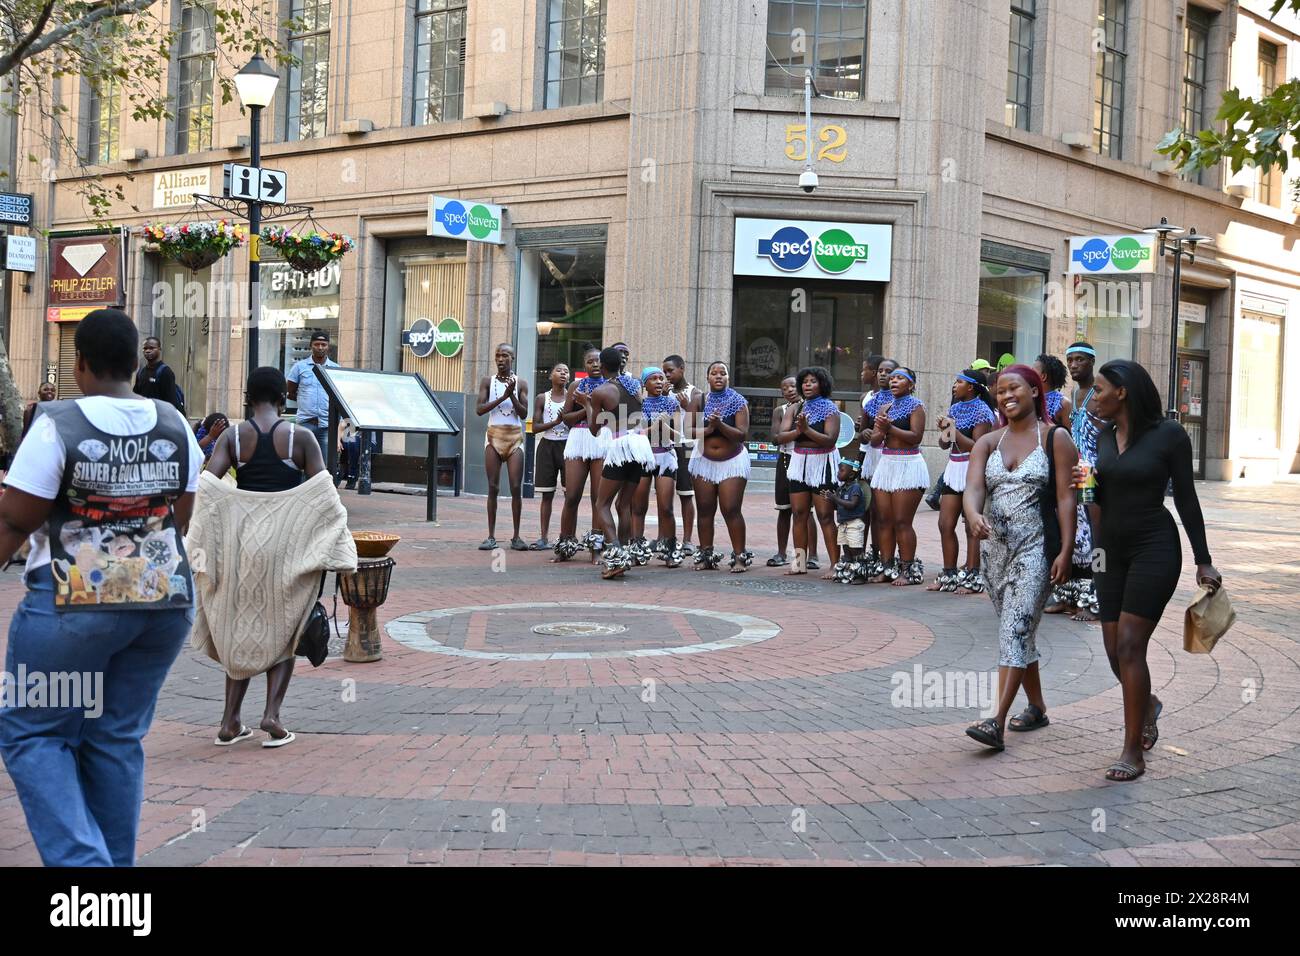 Gruppo di ragazzi e ragazze di colore in costume locale che eseguono una tipica danza africana nel centro di città del Capo, in Sudafrica Foto Stock